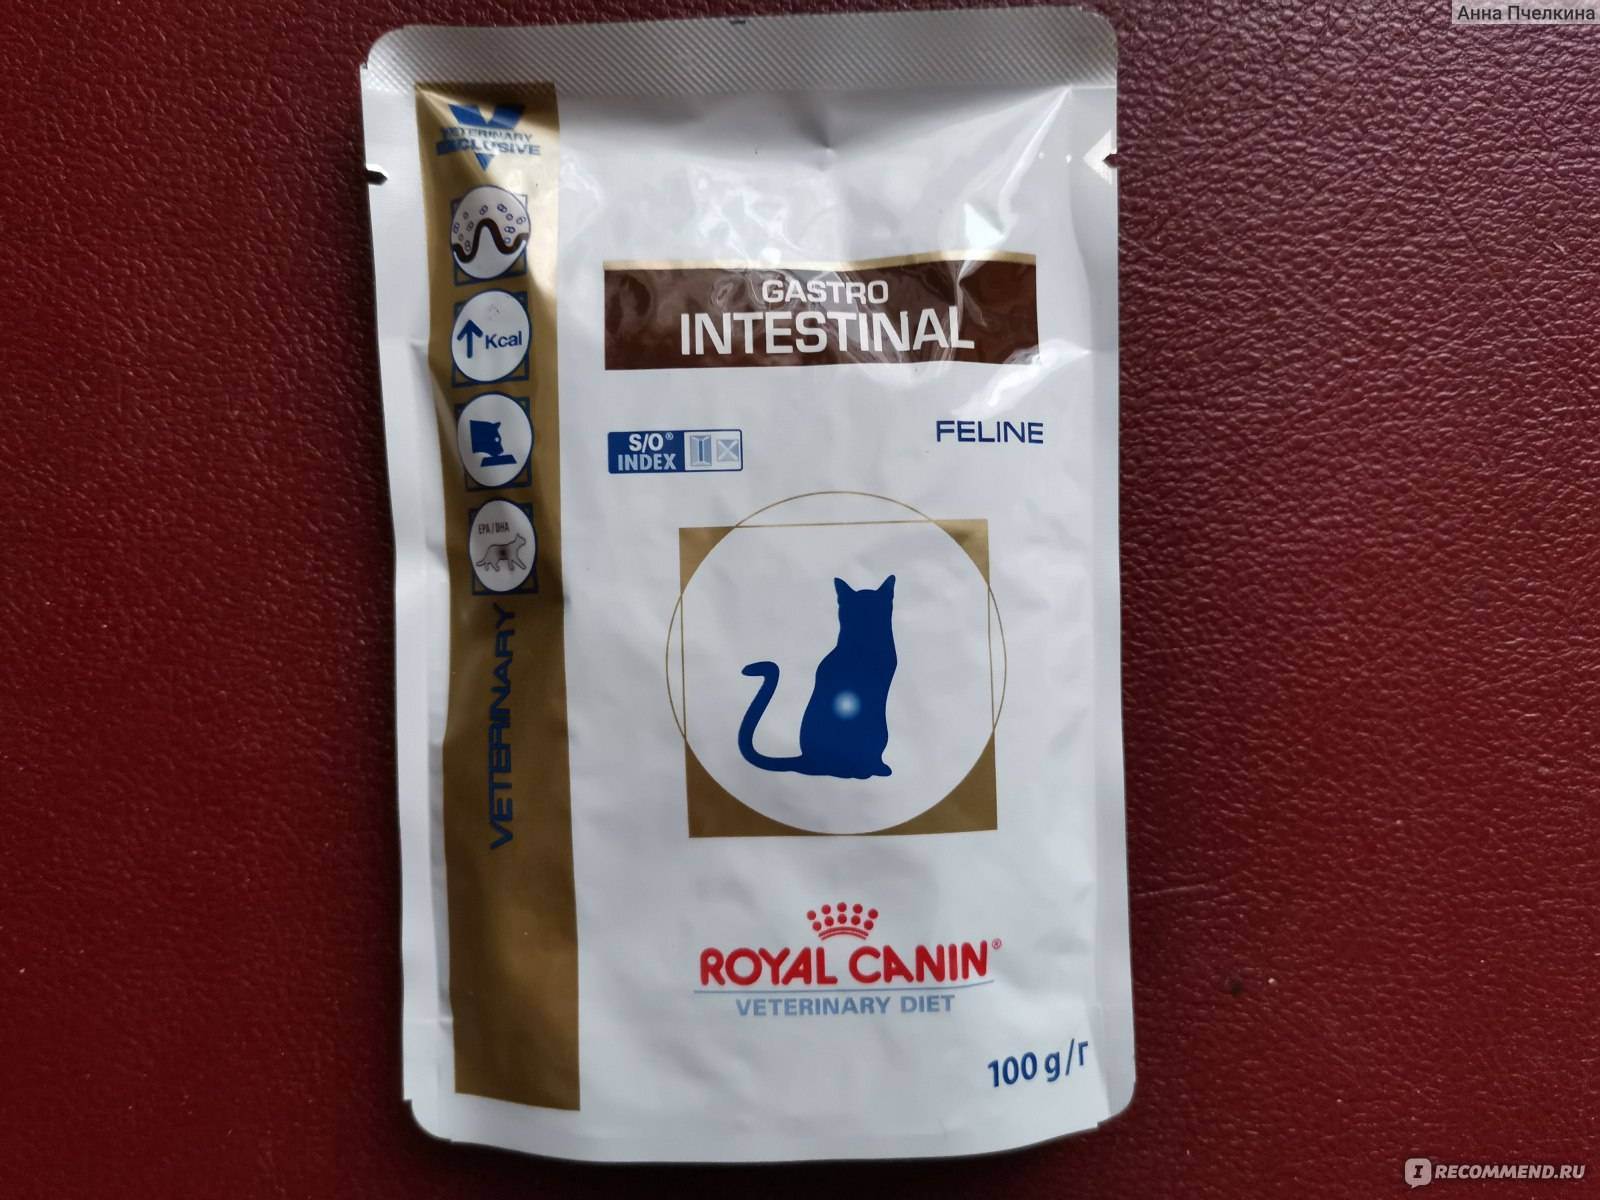 Royal canin gastro intestinal для кошек при нарушении пищеварения